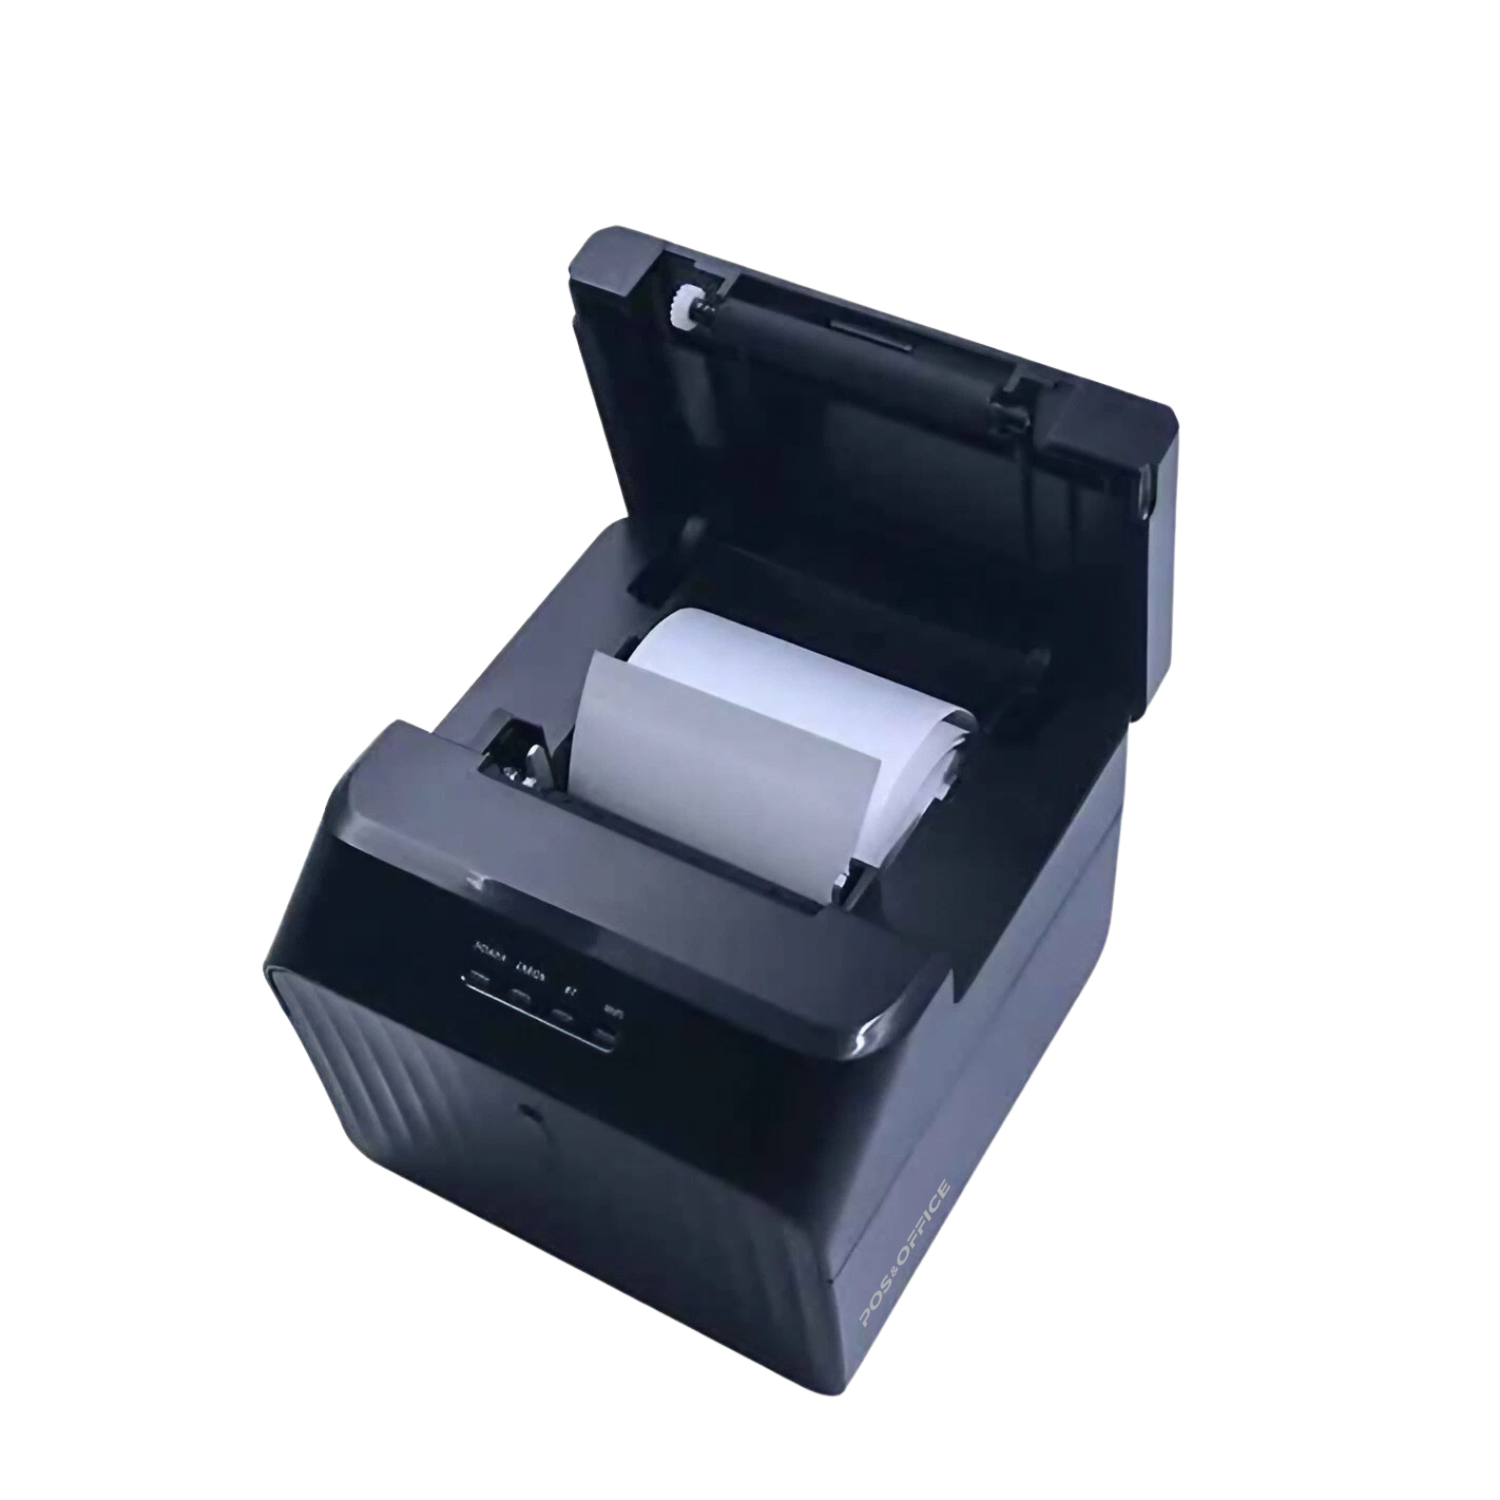 TP26, impresora térmica, impresora de tickets, impresora térmica de tickets, impressora de notas, impressora térmica, impressora térmica não fiscal, impresora de 2", impressora de 2", ticket thermal printer, ticket printer, POS printer, automação comercial, punto de venta